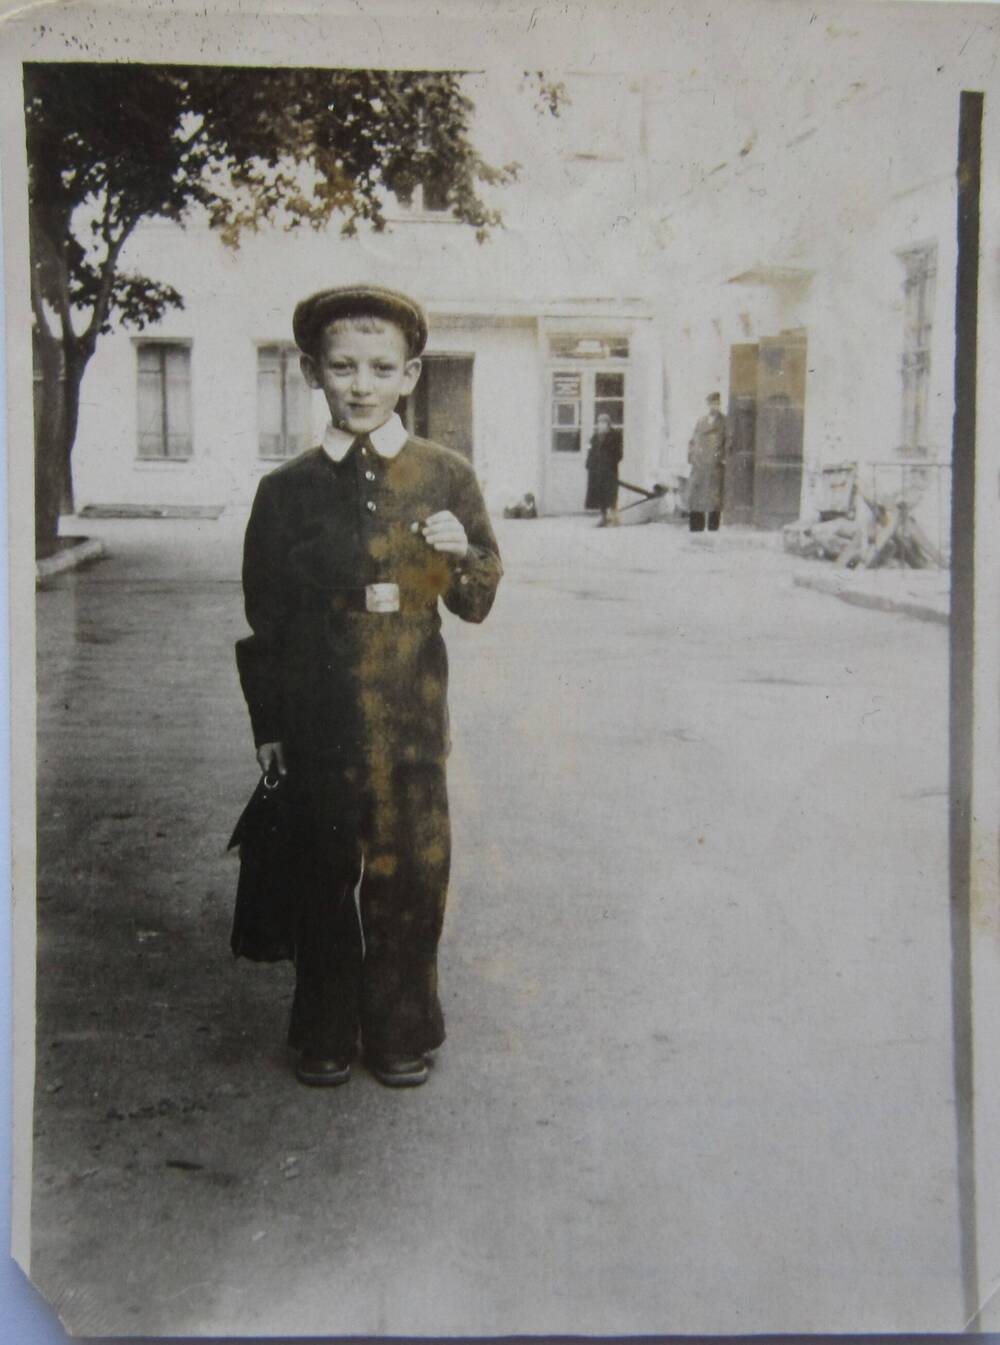 Фотоснимок. На фото мальчик в школьной форме в полный рост. На голове кепка, в руках портфель. На заднем плане здание школы. 1959 г. СССР. 
Коллекция фотографий 40-50-х годов, собранная 
Березнёвой М. А.